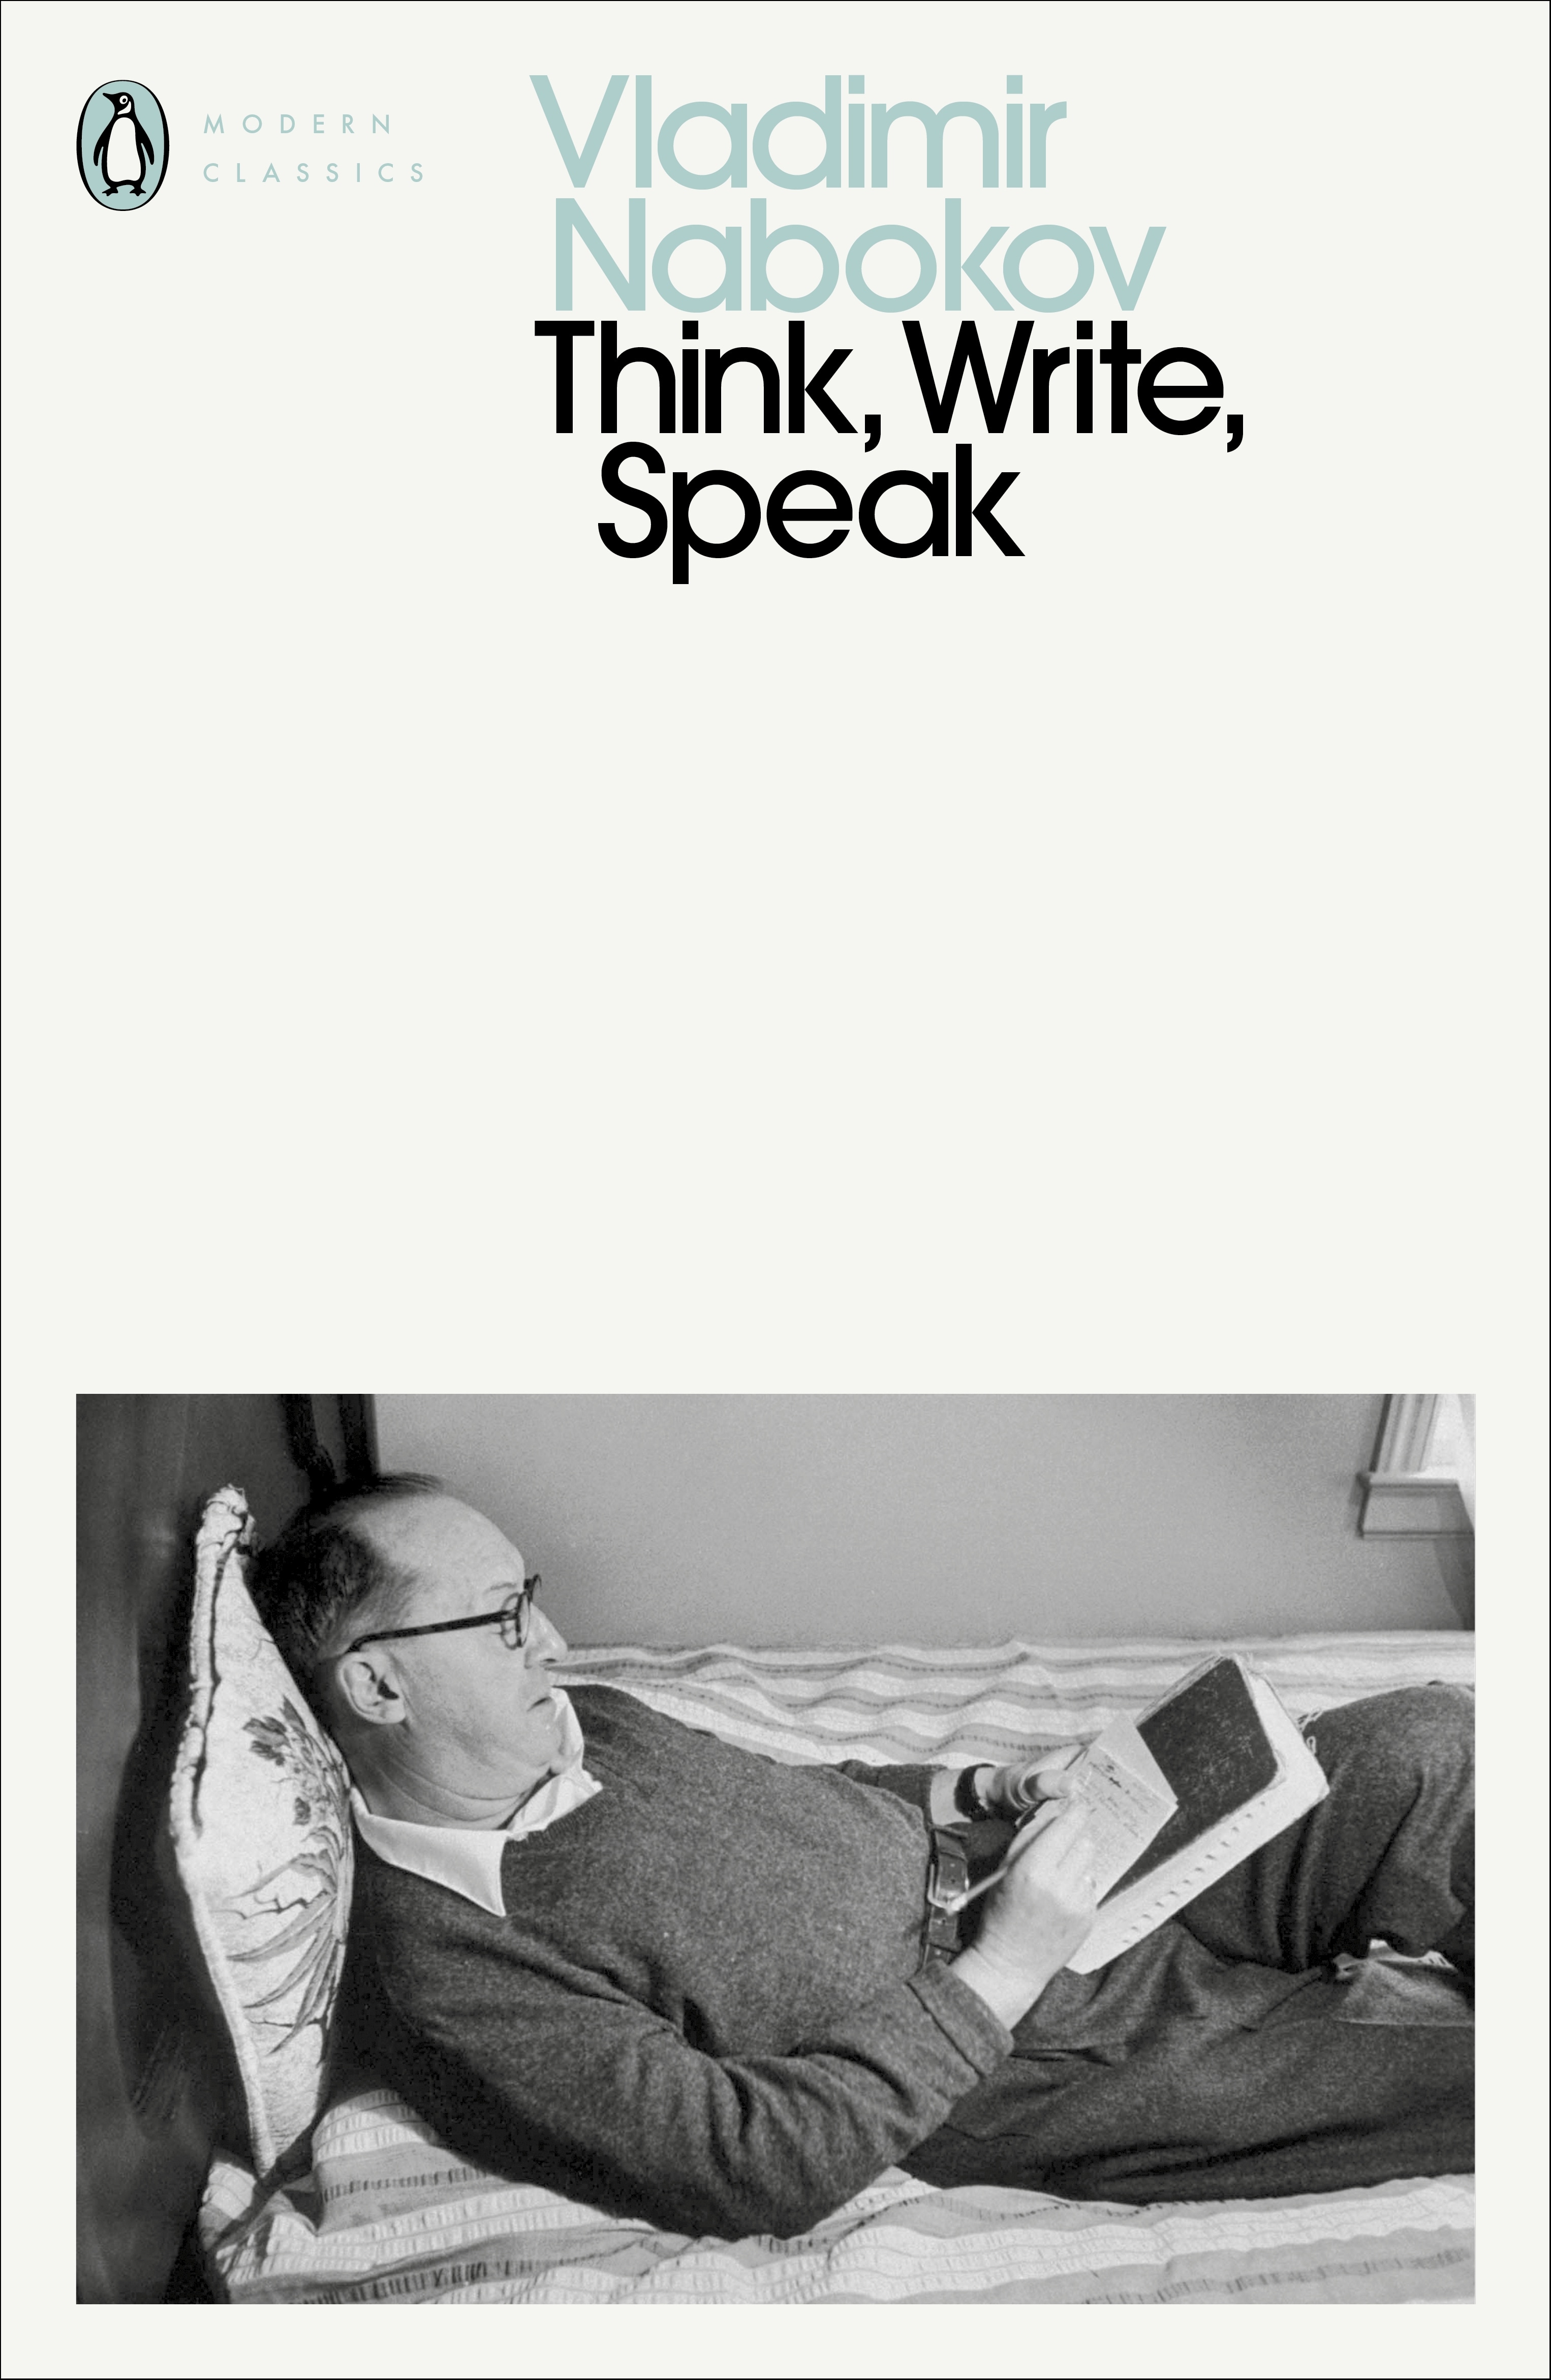 Book “Think, Write, Speak” by Vladimir Nabokov — November 5, 2020